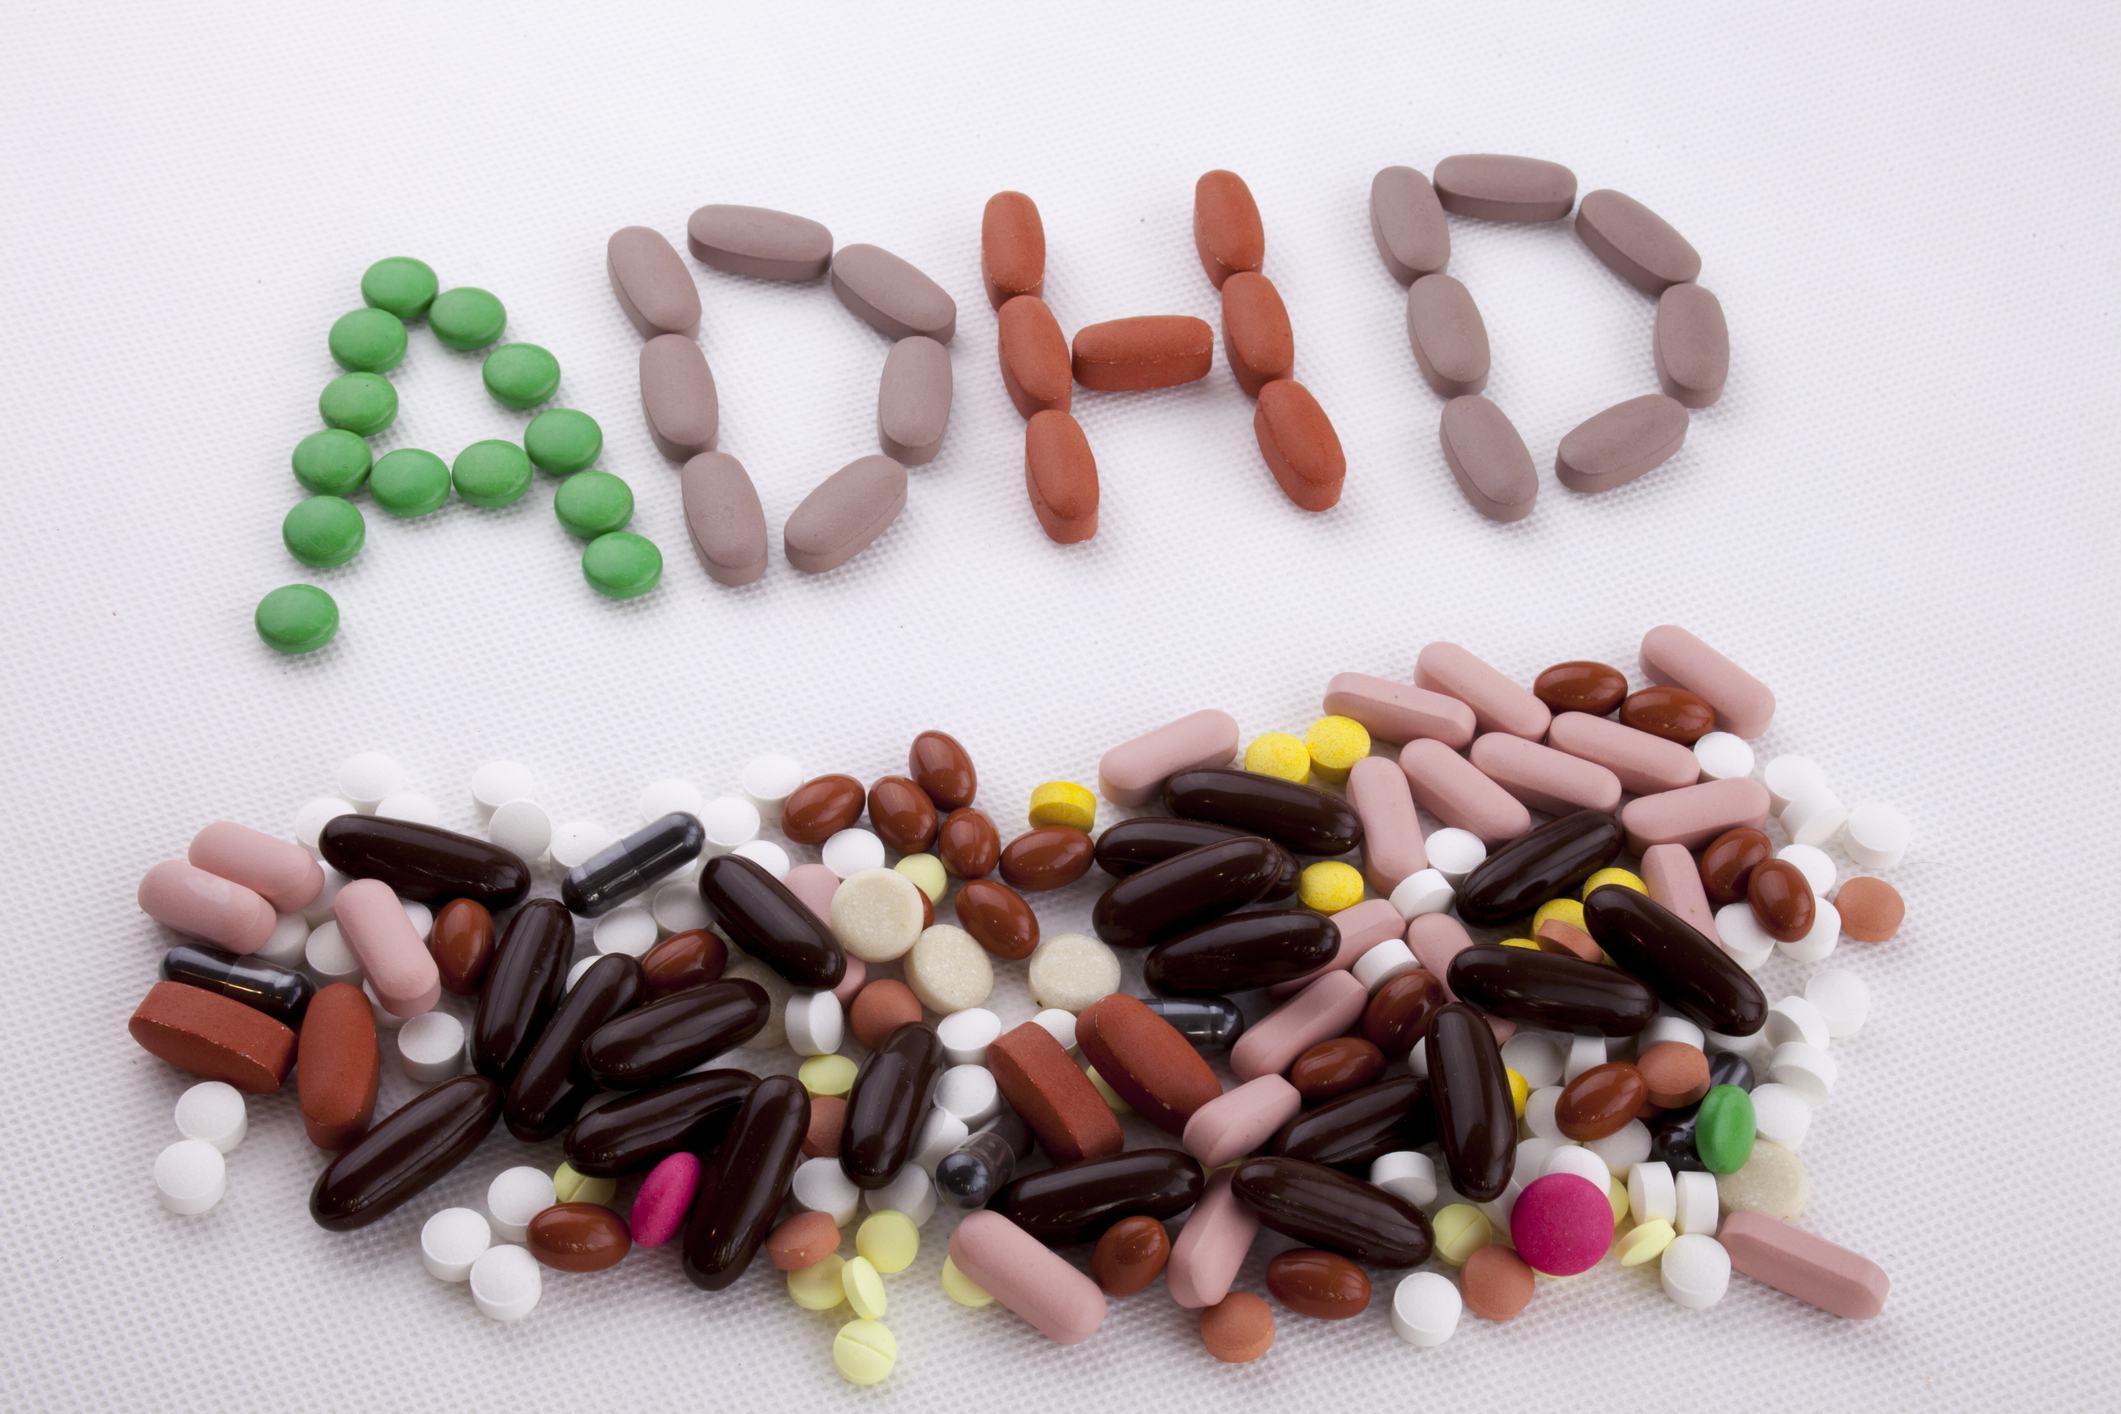 吃藥行為常讓 ADHD 患者被貼上「有病才吃藥」的污名標籤，如何教導孩子正向看待吃藥，是家長面臨的挑戰之一。 圖｜iStock